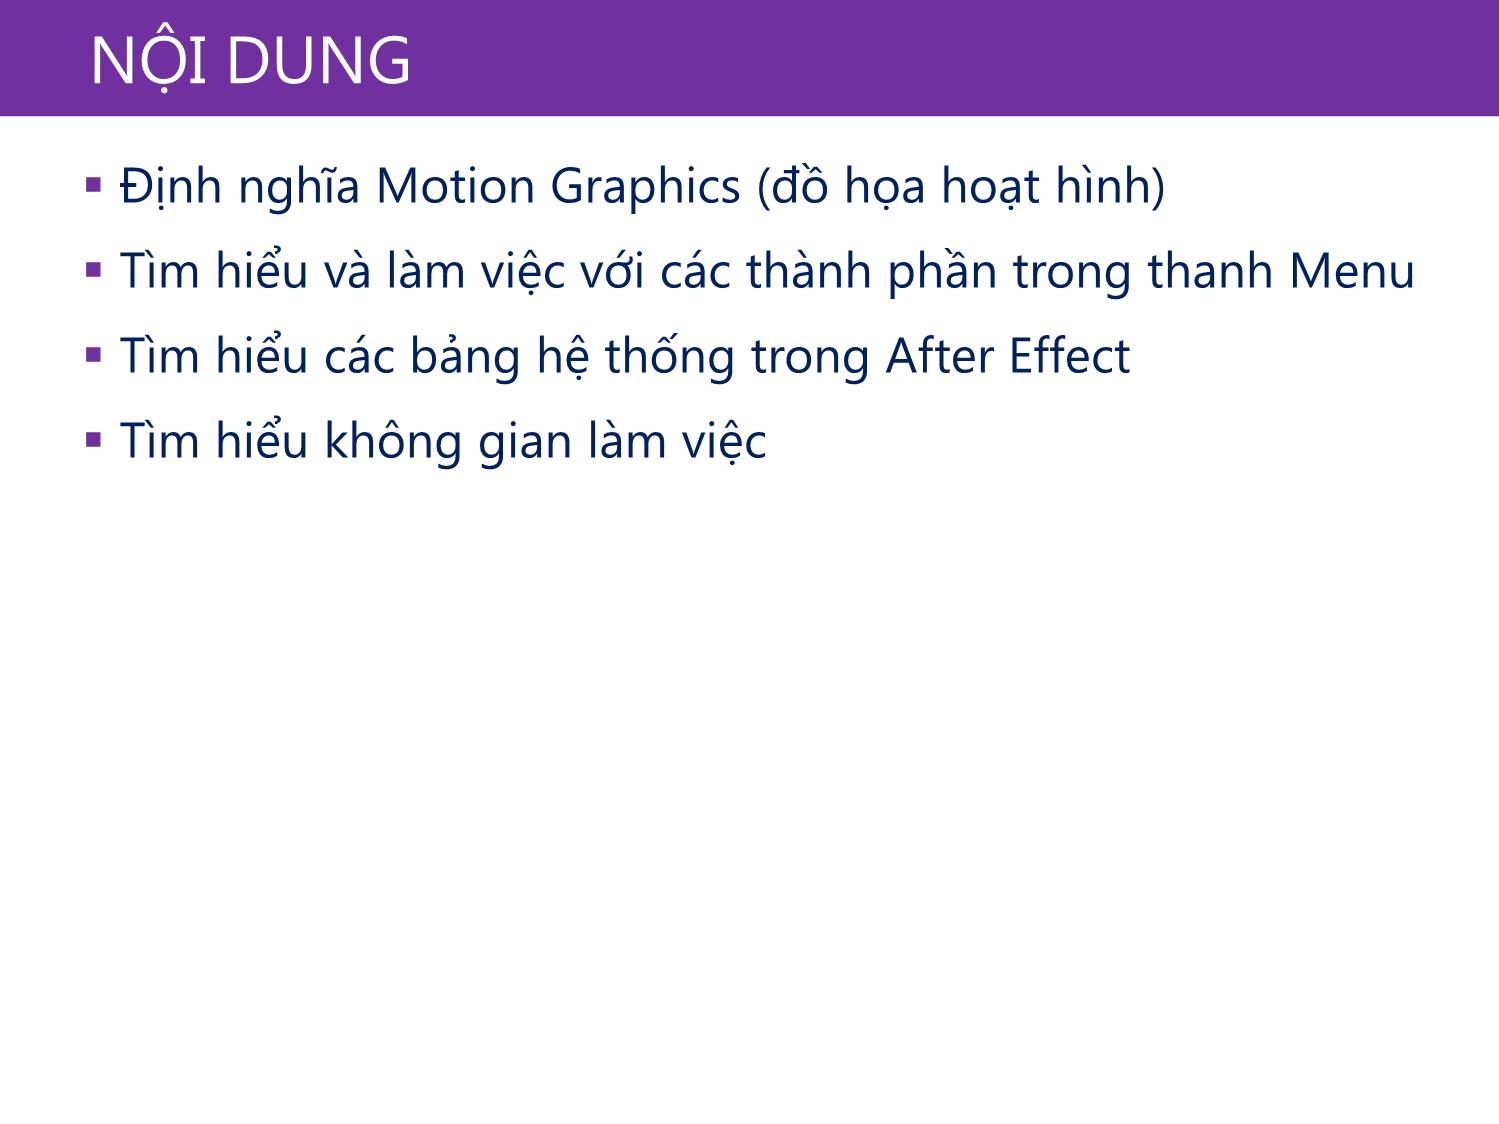 Bài giảng Xử lý kỹ xảo với After Effect Cs6 - Bài 1: Tìm hiểu về Motion Graphic và giao diện phần mềm After Effect Cs6 trang 4